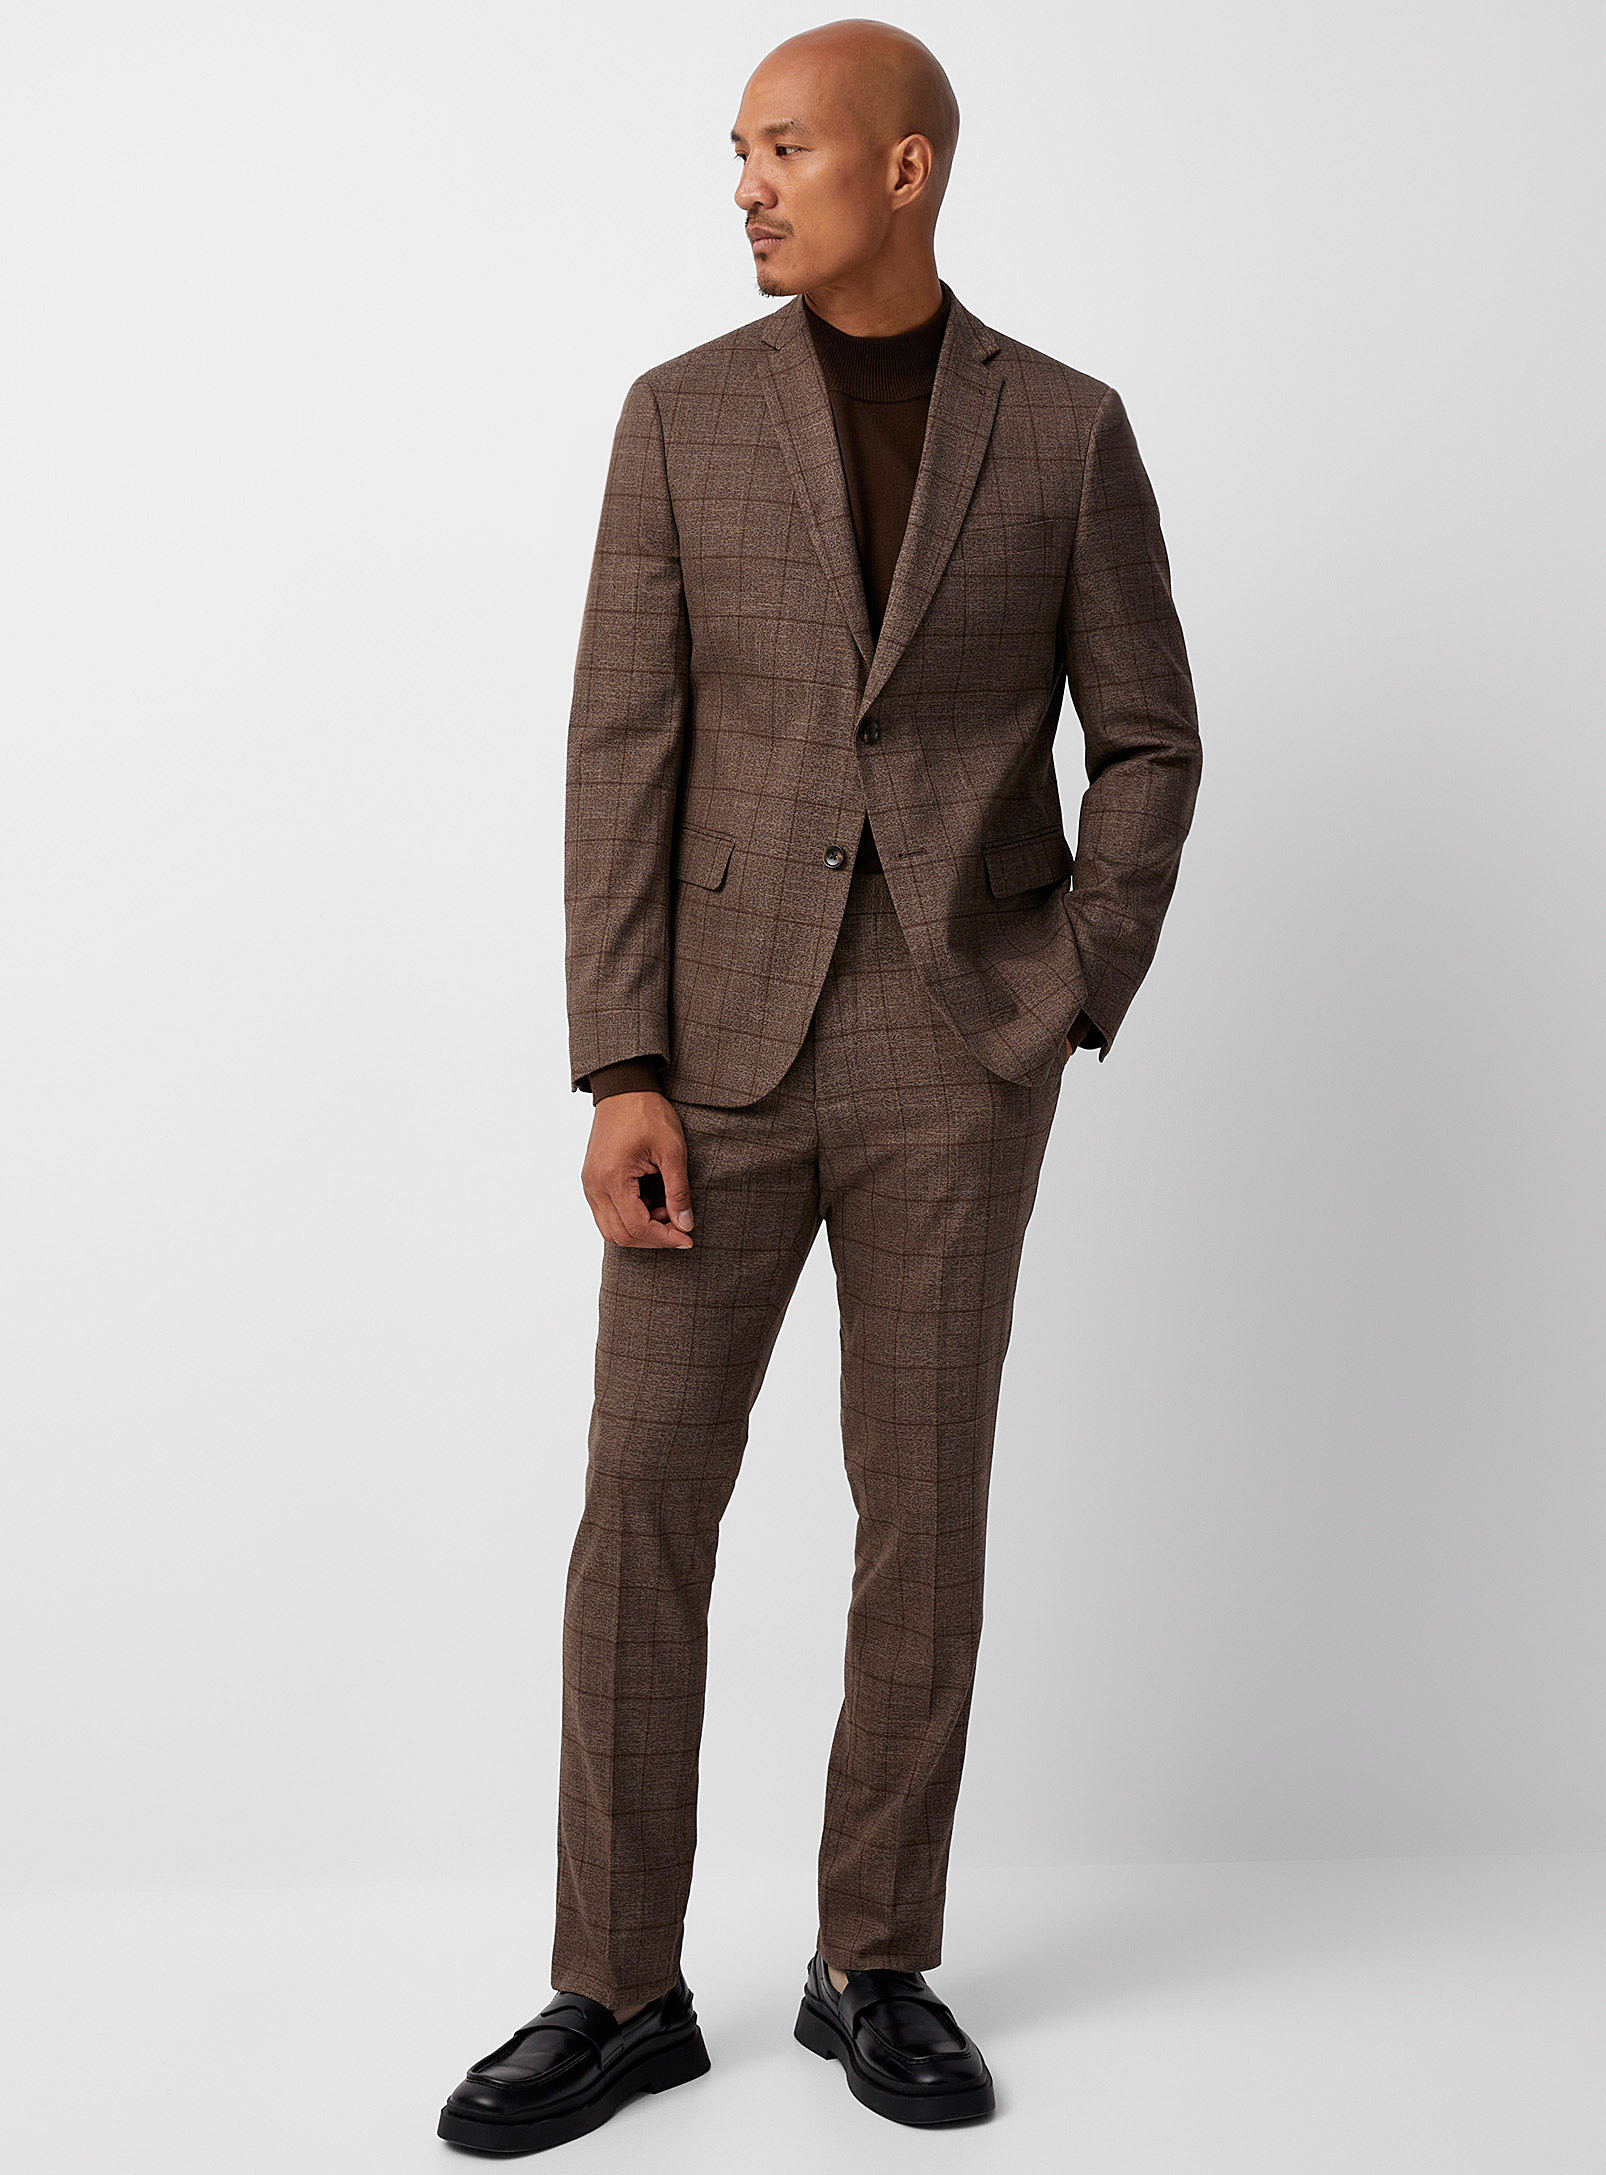 Bosco - Men's Coffee-coloured windowpane check suit Semi-slim fit